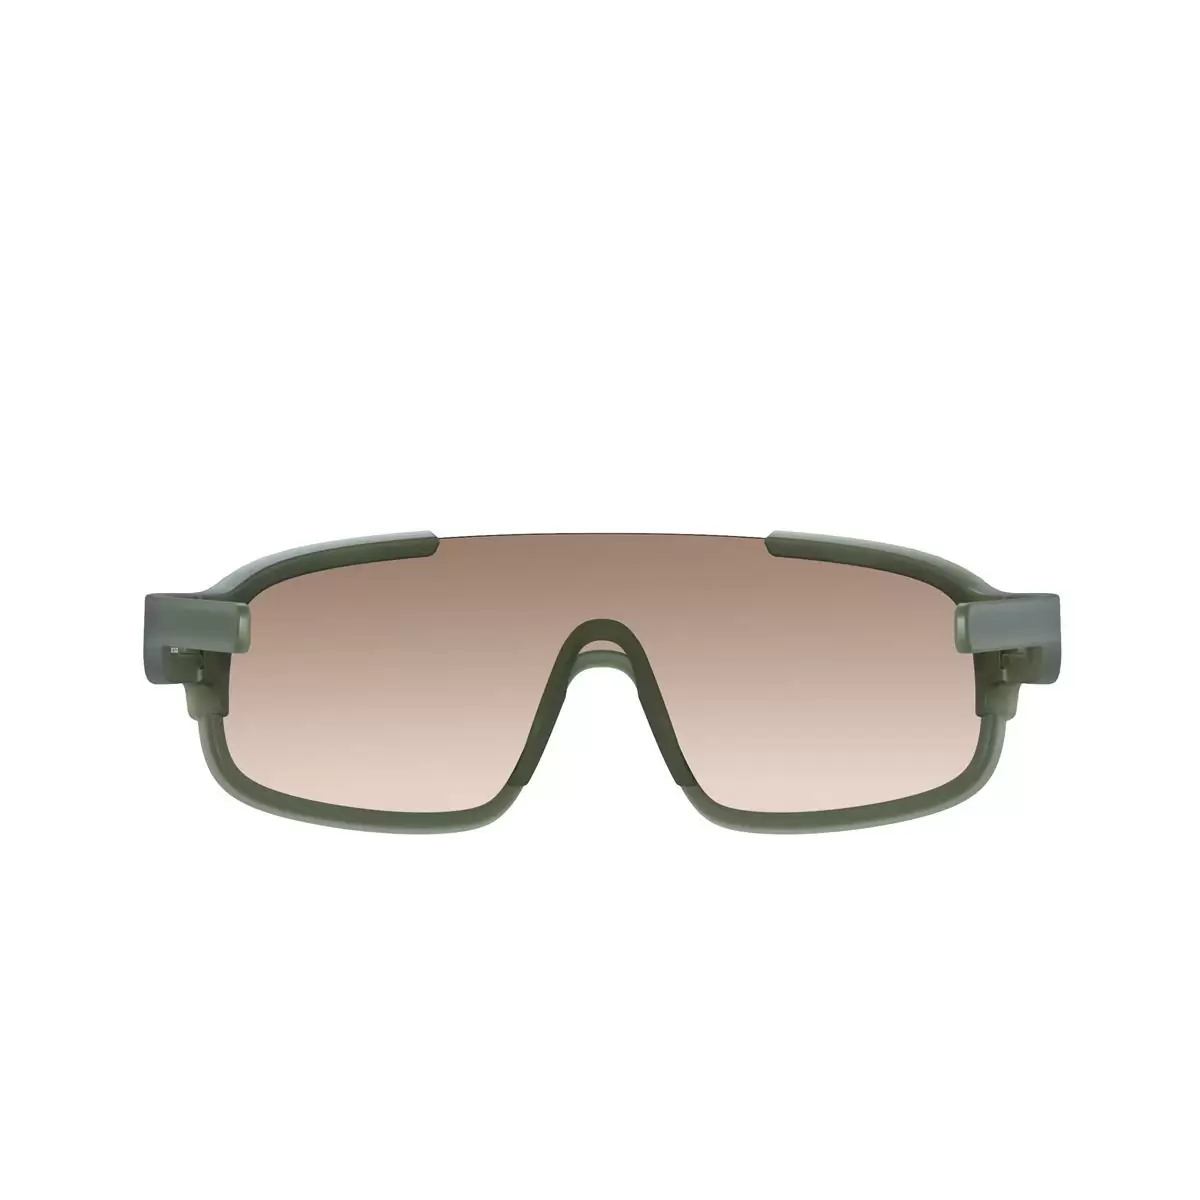 Óculos de sol Crave Epidote Verde Marrom/Prata Lentes espelhadas #3